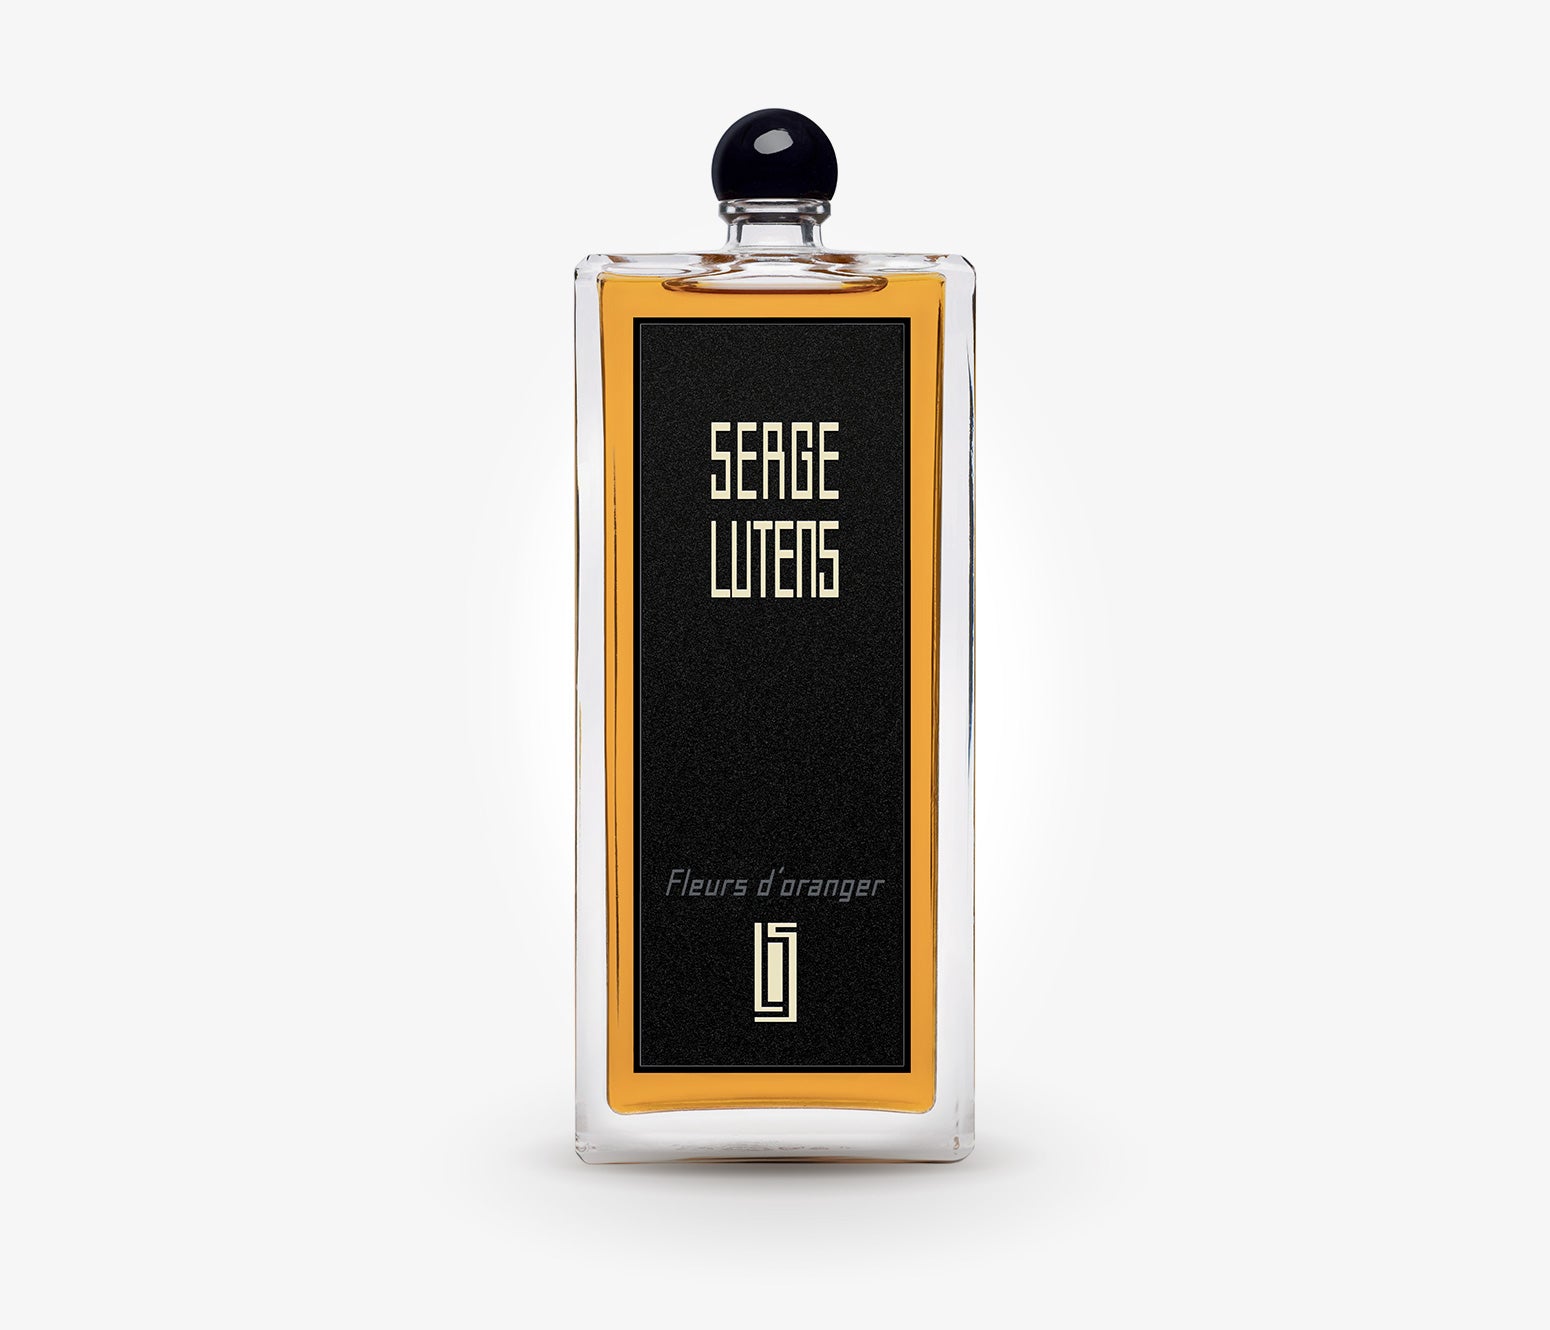 Serge Lutens - Fleurs d'Oranger - 100ml - MDS1819 - product image - Fragrance - Les Senteurs